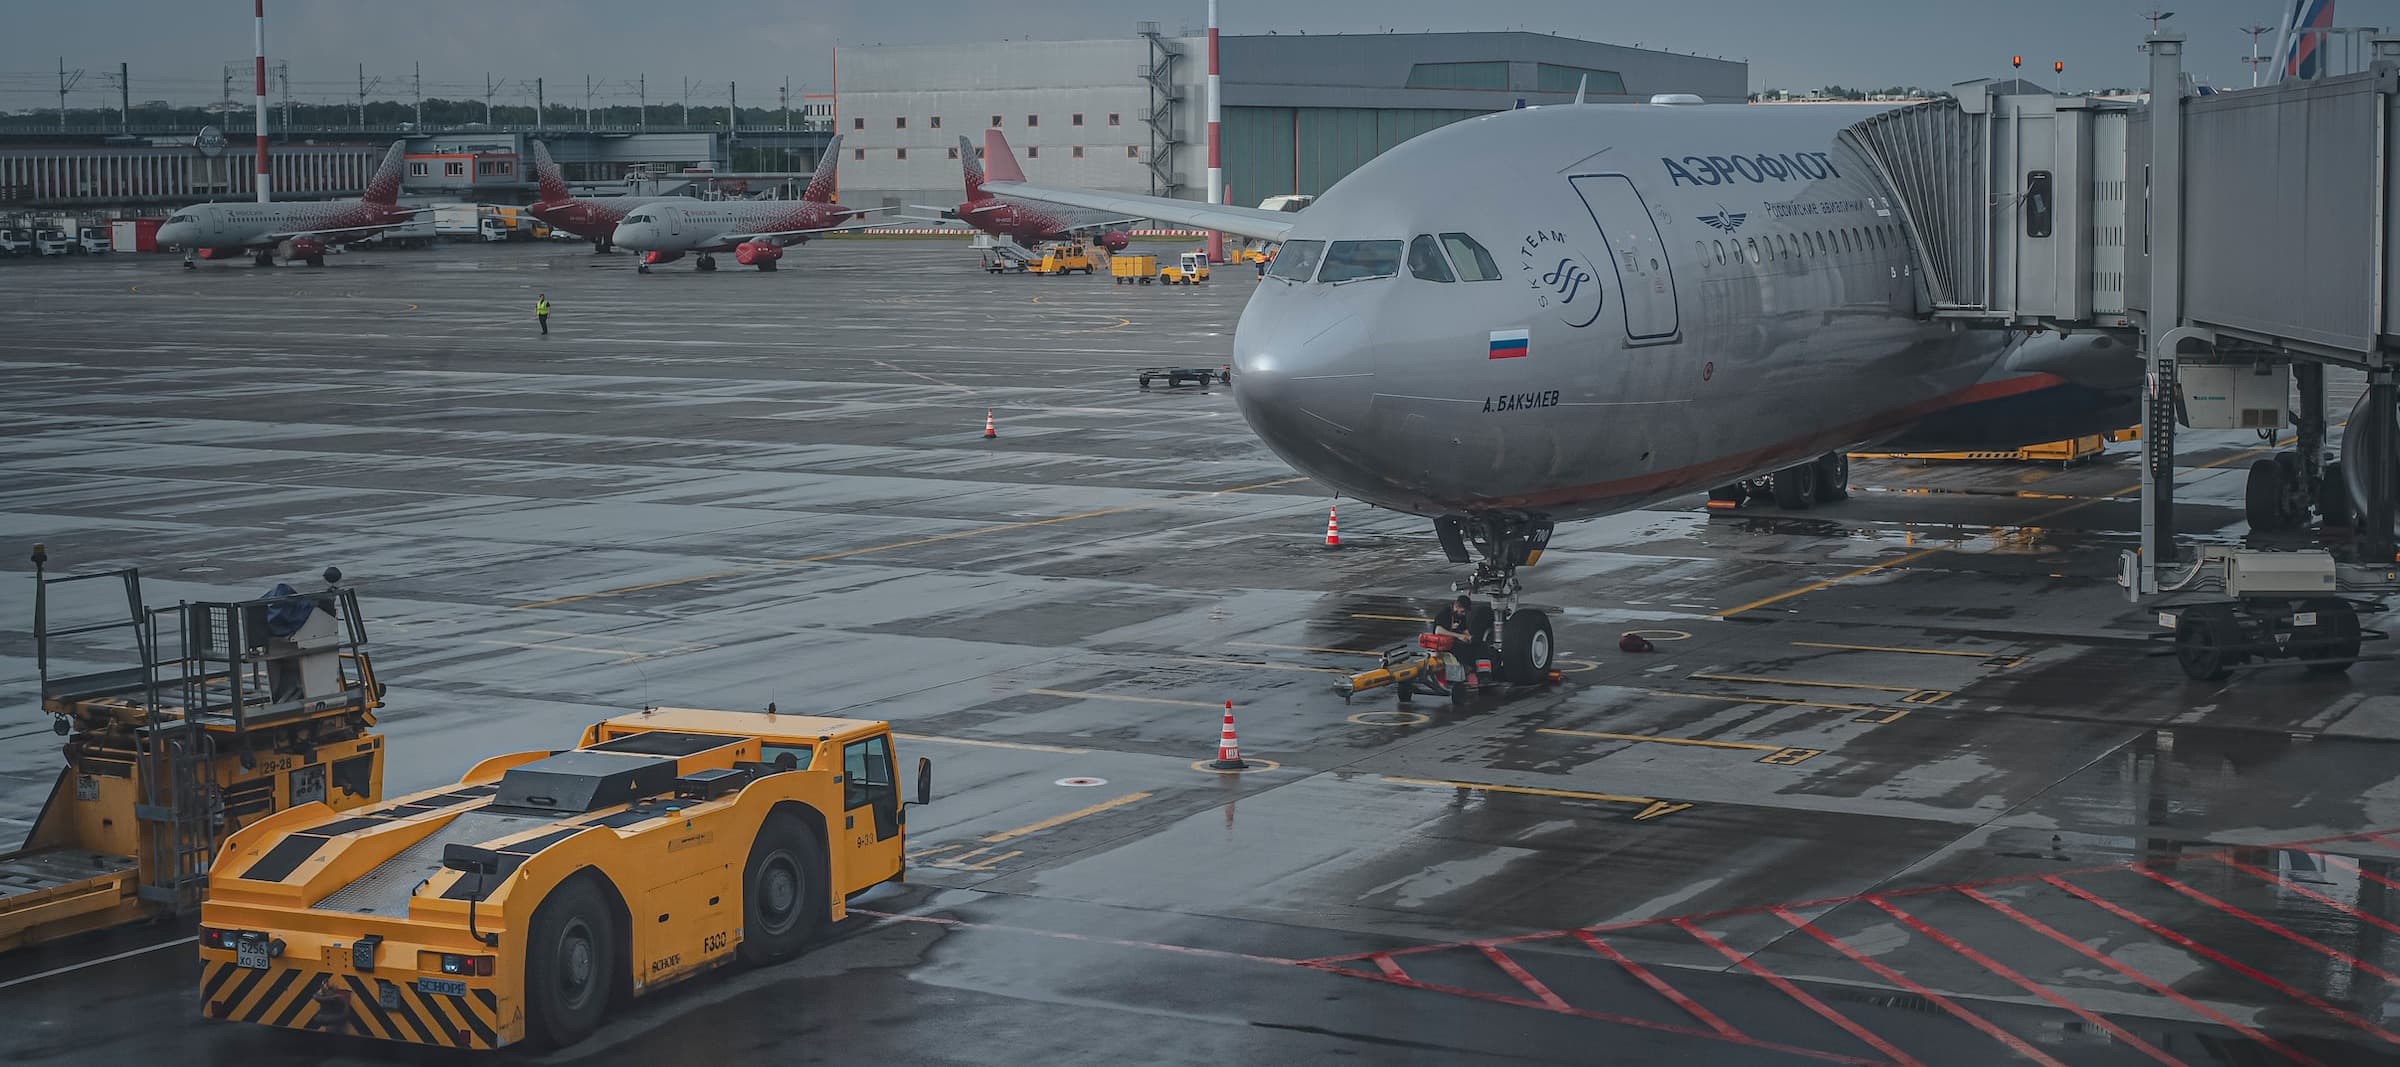 Фото новости: "Россияне скупили авиабилеты в страны ближнего и дальнего зарубежья"